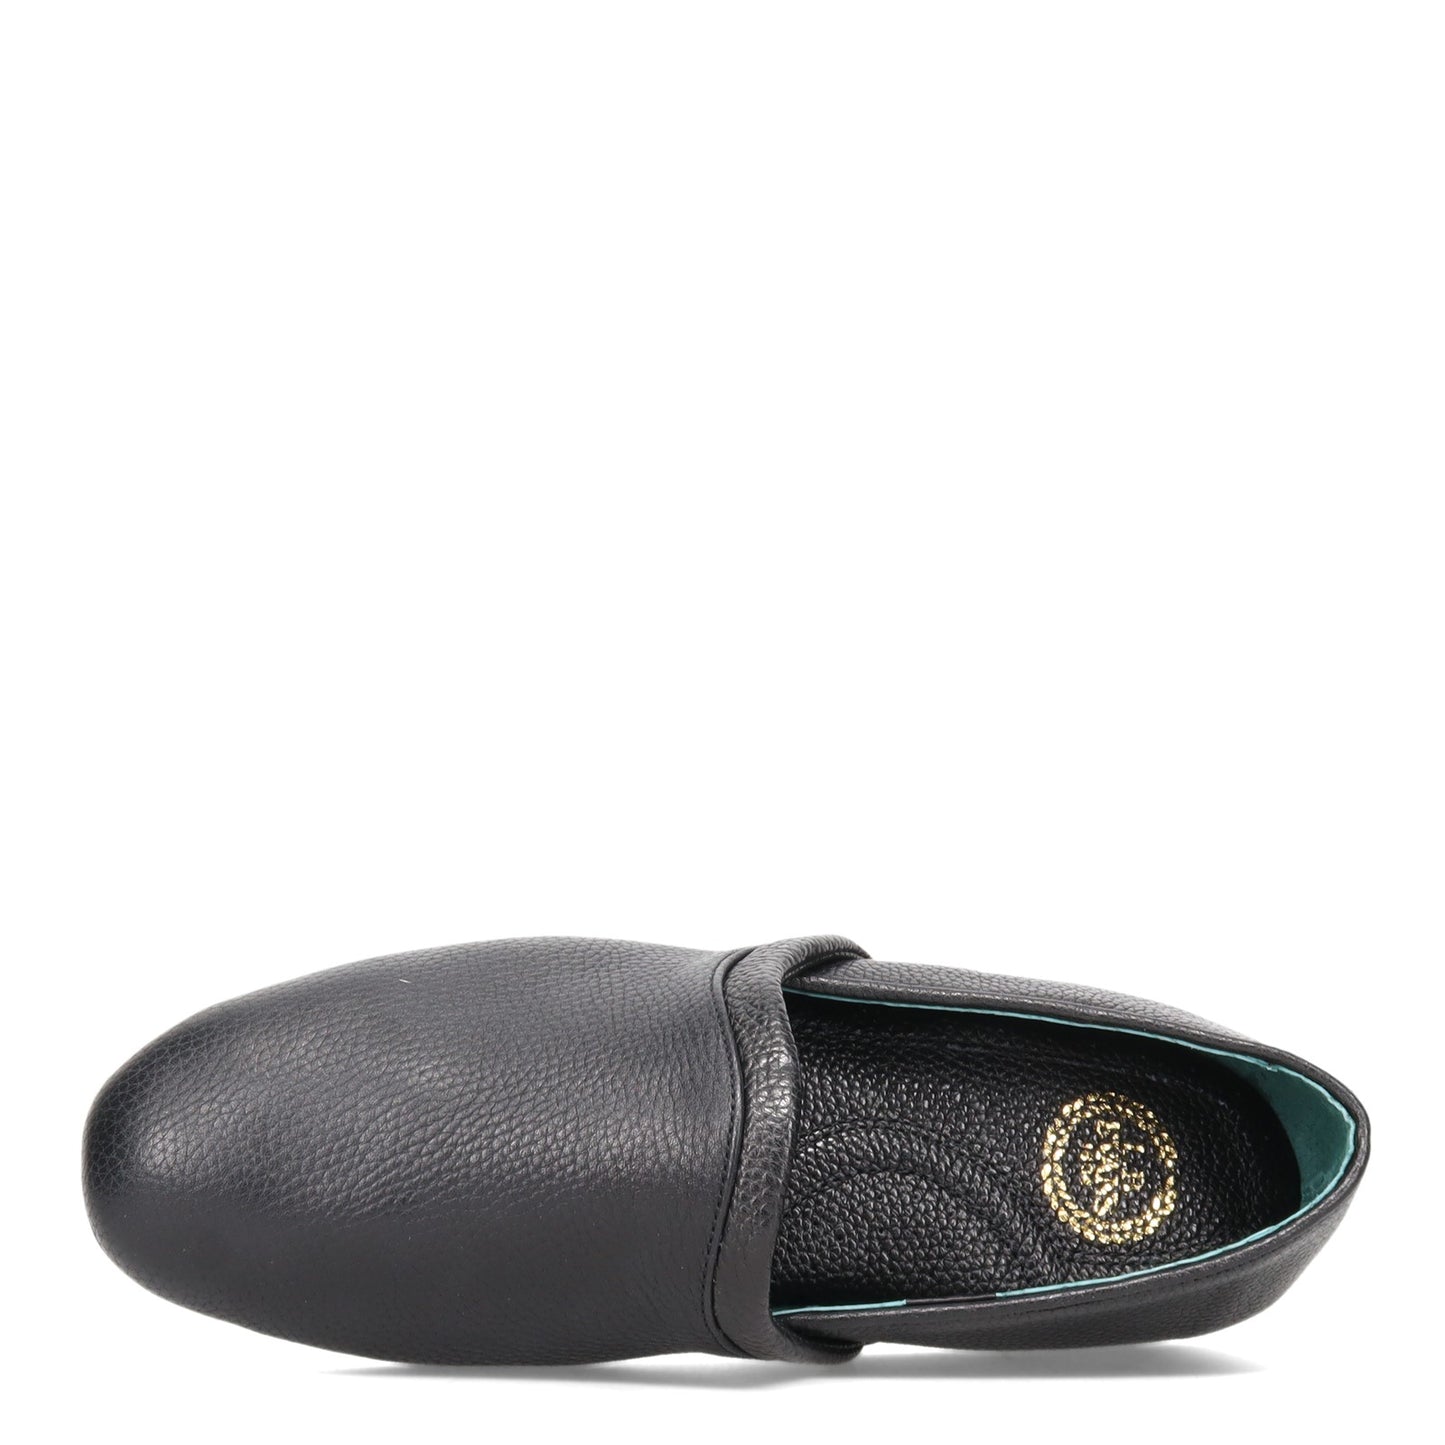 Peltz Shoes  Men's L.B. Evans Aristocrat Opera Slipper BLACK 3026